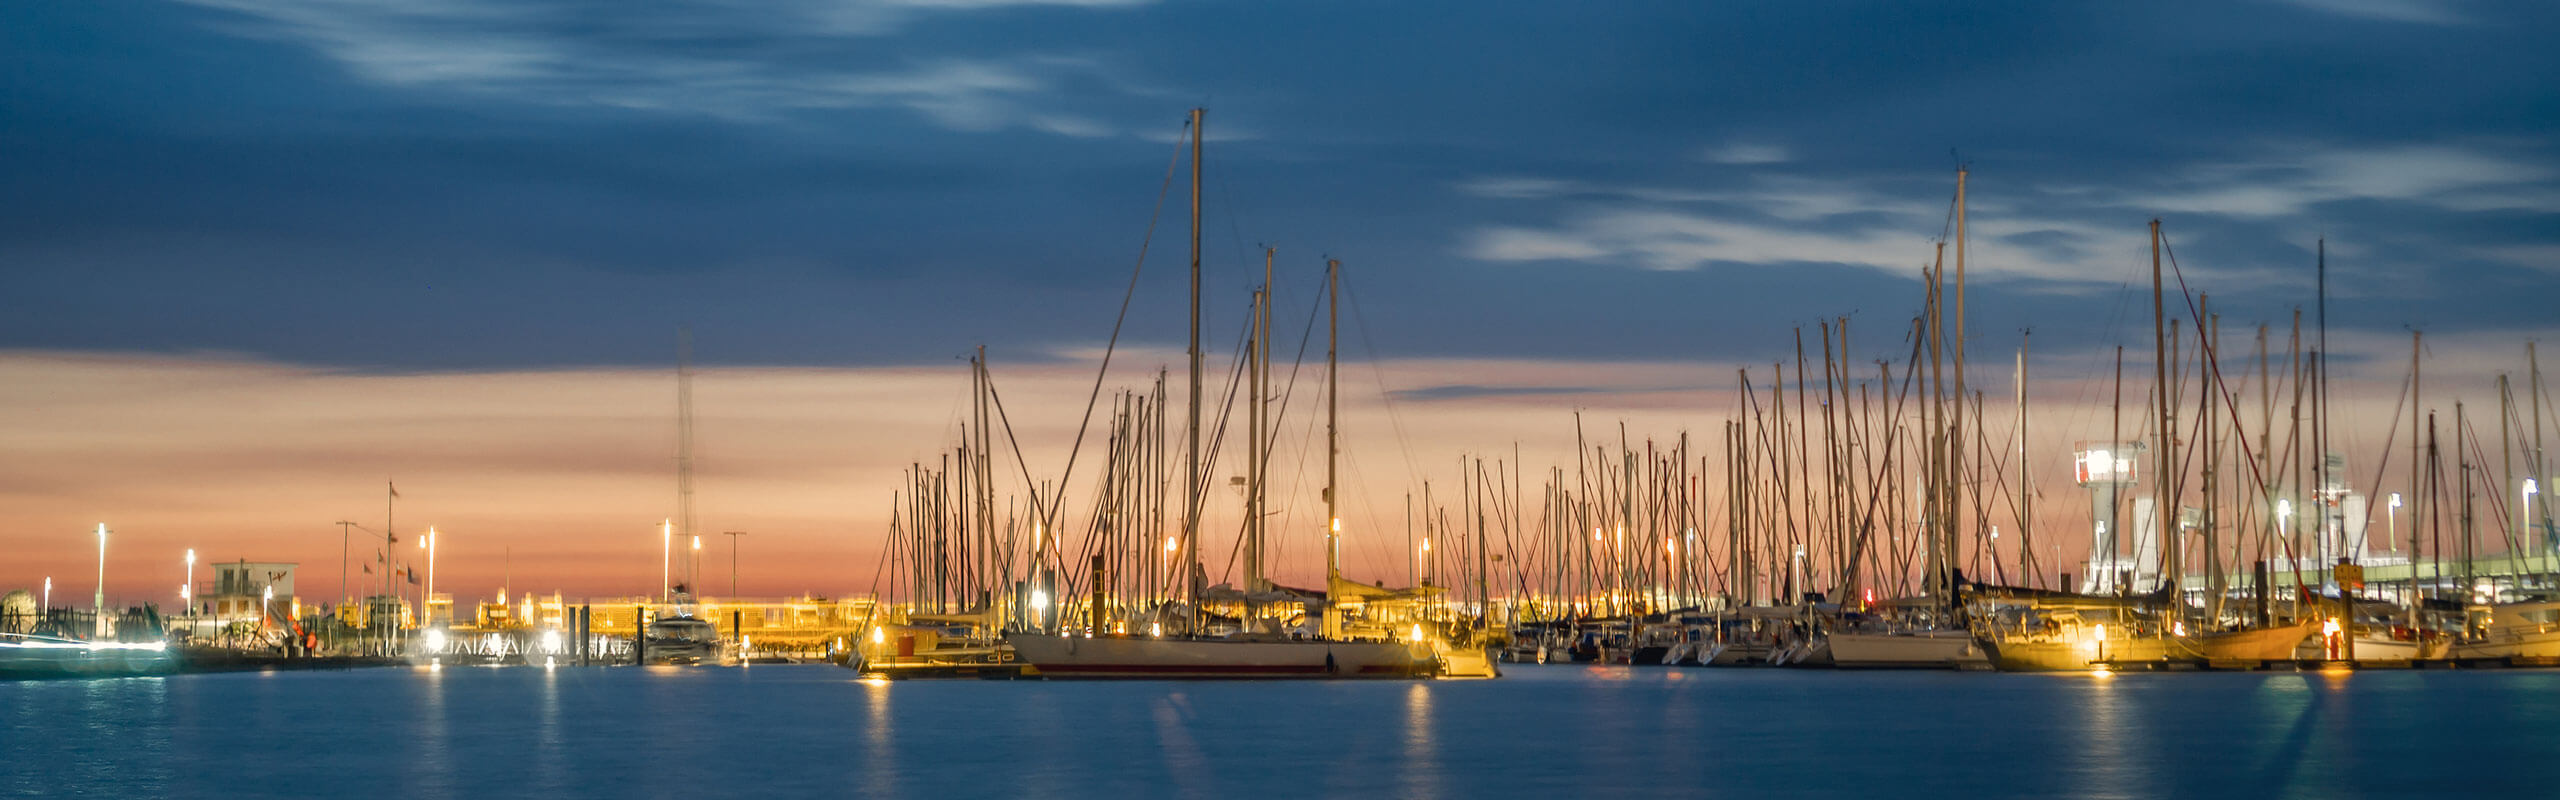 Segelschiffe im Hafen bei Sonnenuntergang